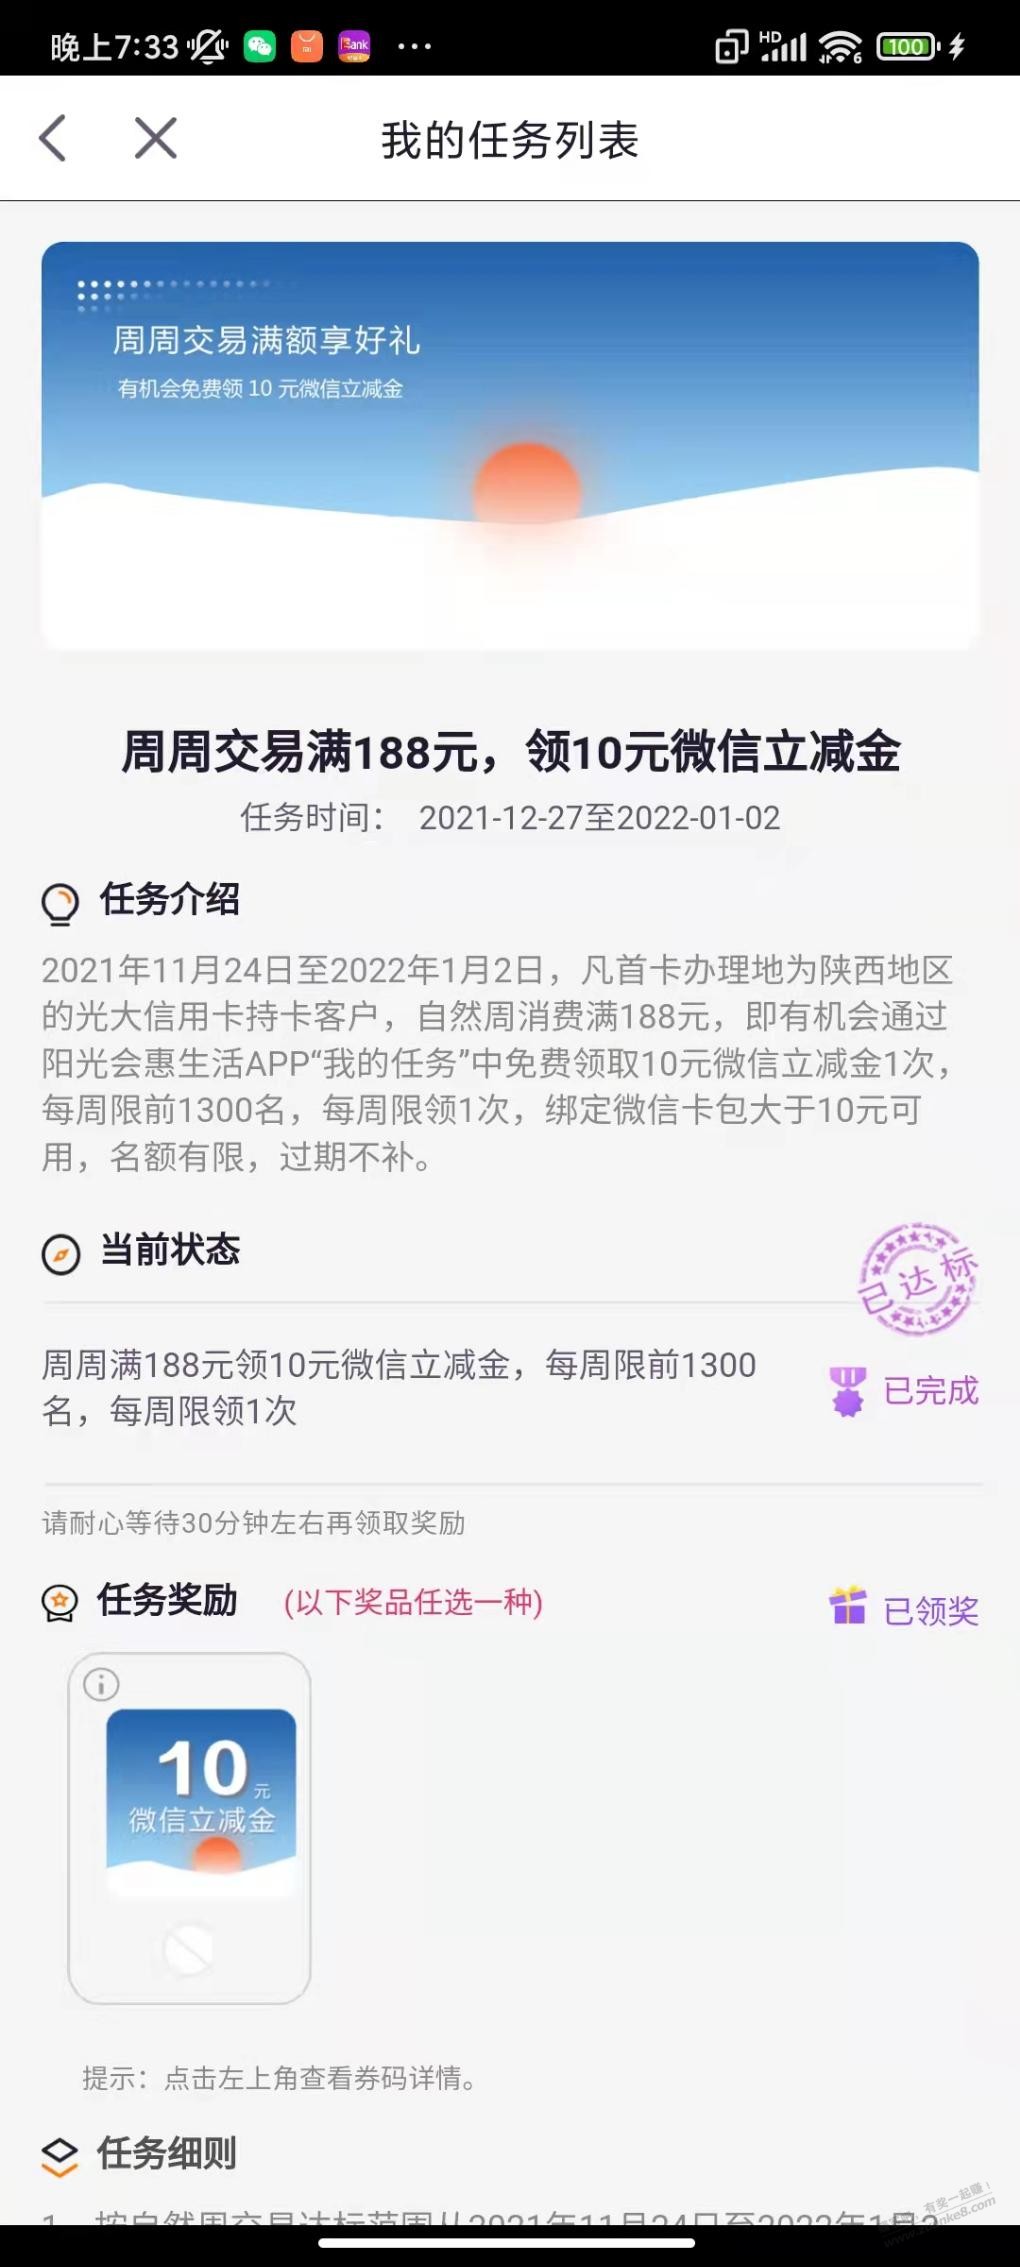 陕西光大xyk每周10元毛-惠小助(52huixz.com)